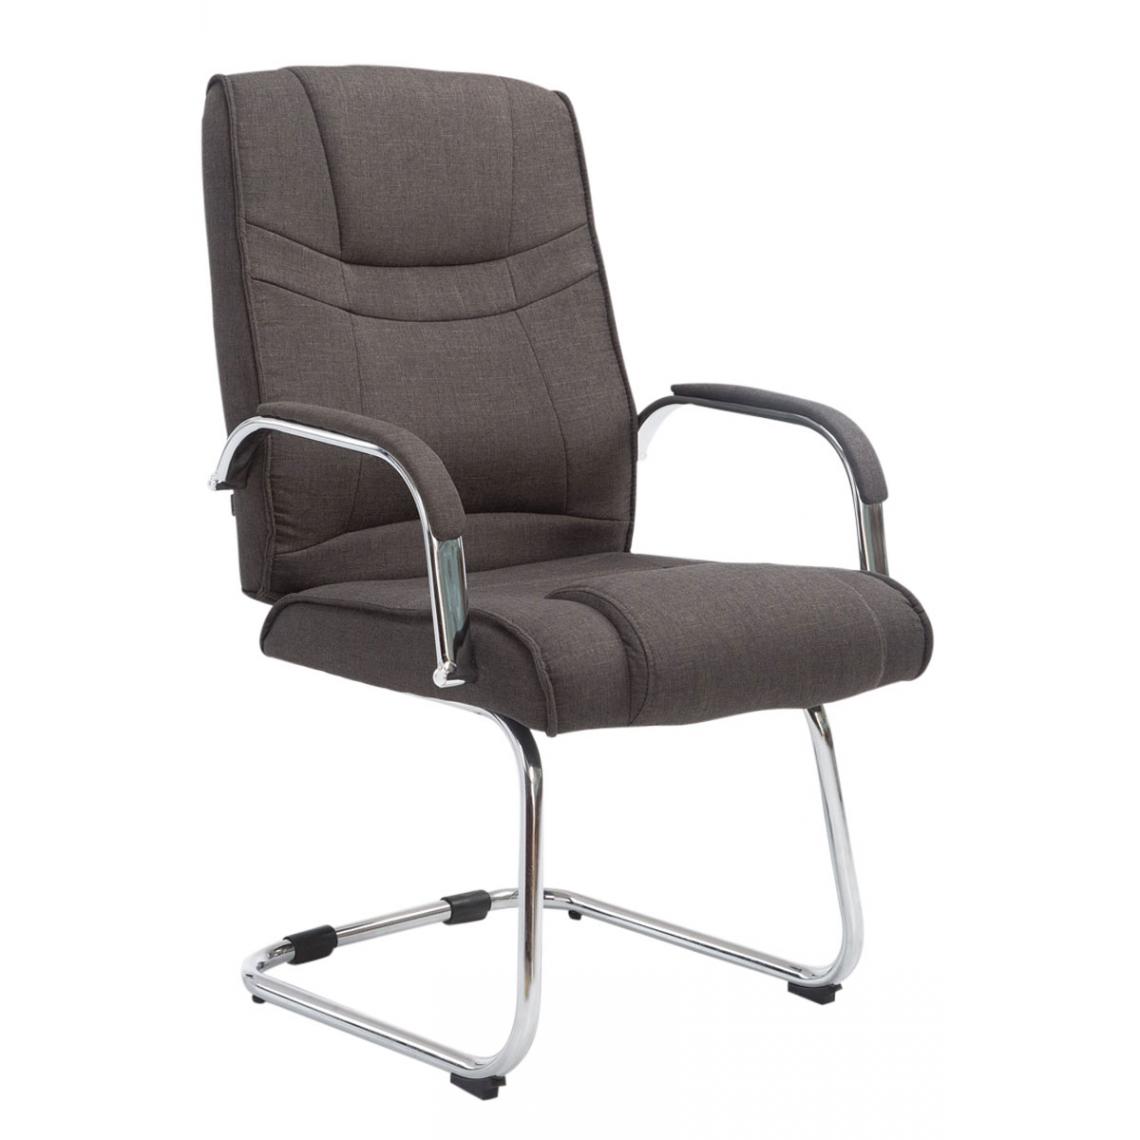 Icaverne - Moderne Chaise visiteur en tissu categorie Budapest couleur gris foncé - Chaises